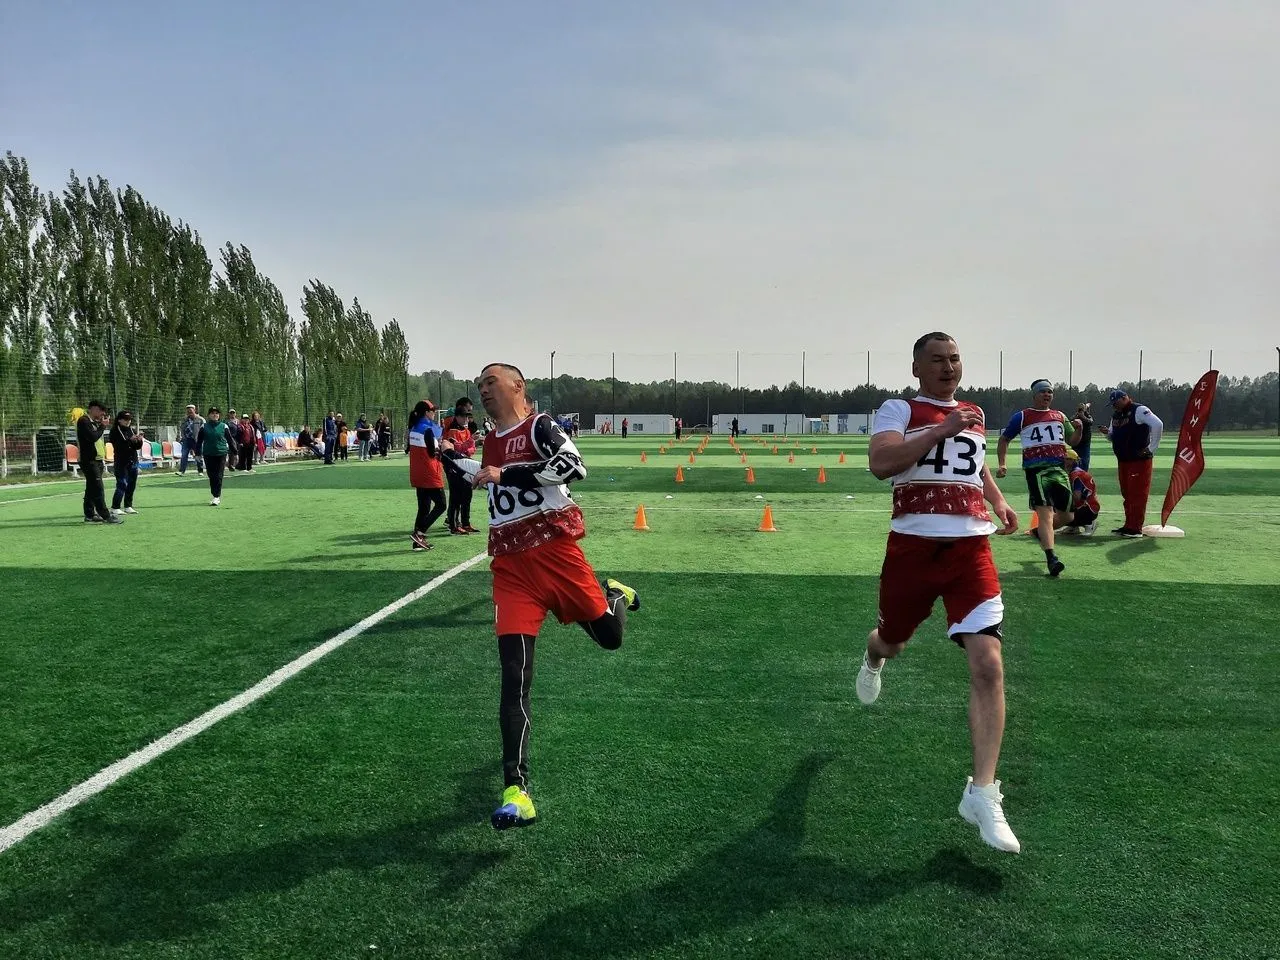 Краснокамская семья - самая спортивная семья Республики Башкортостан